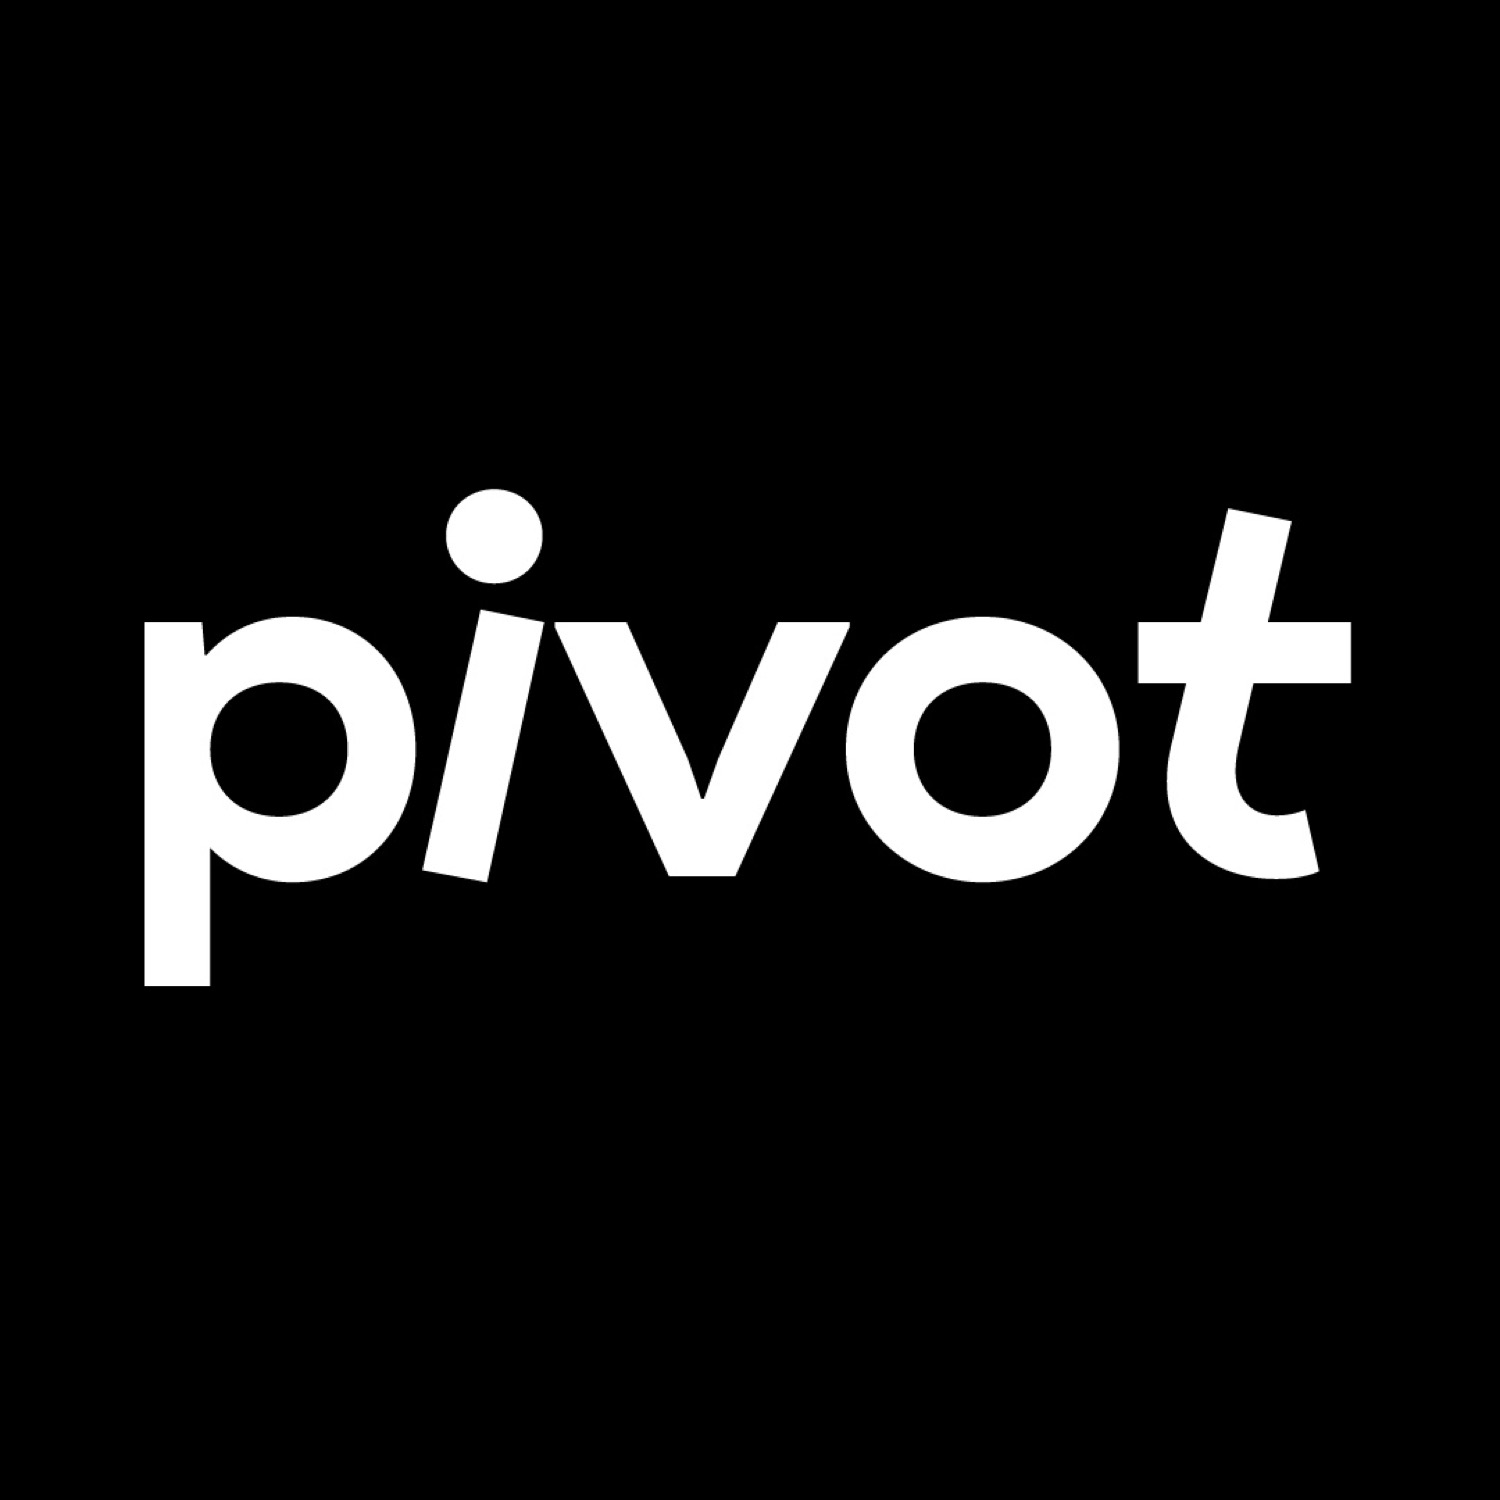 Pivot在线培训学校视觉形象设计